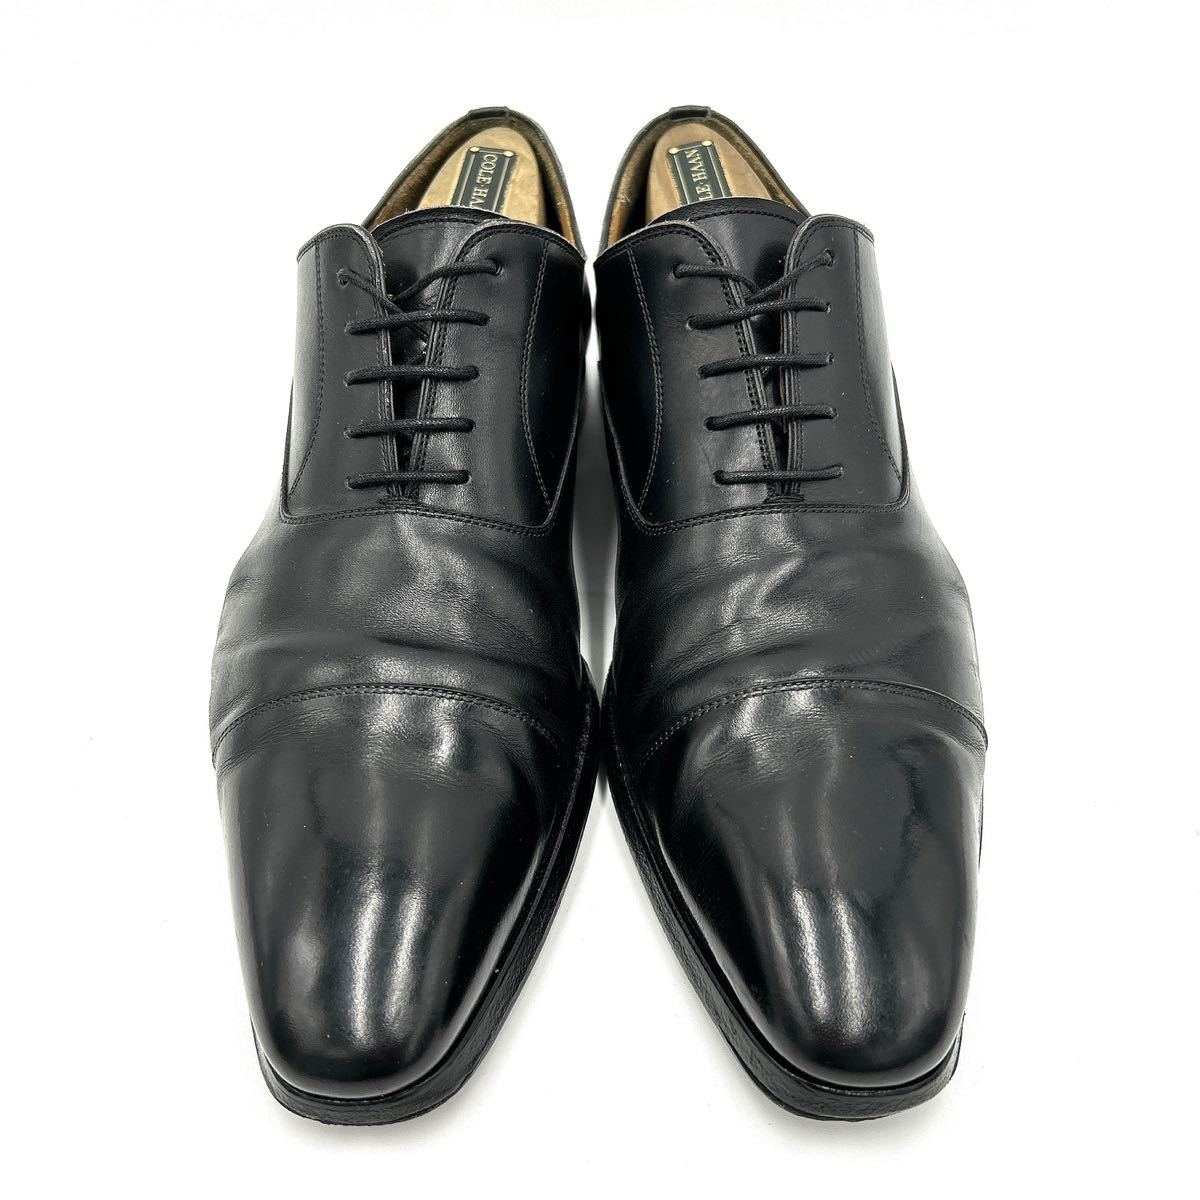 D @ スペイン製 '気品溢れる' MAGNANNI マグナーニ 本革 ビジネスシューズ 革靴 ドレスシューズ EU42 26.5cm 紳士靴 ストレートチップ _画像1